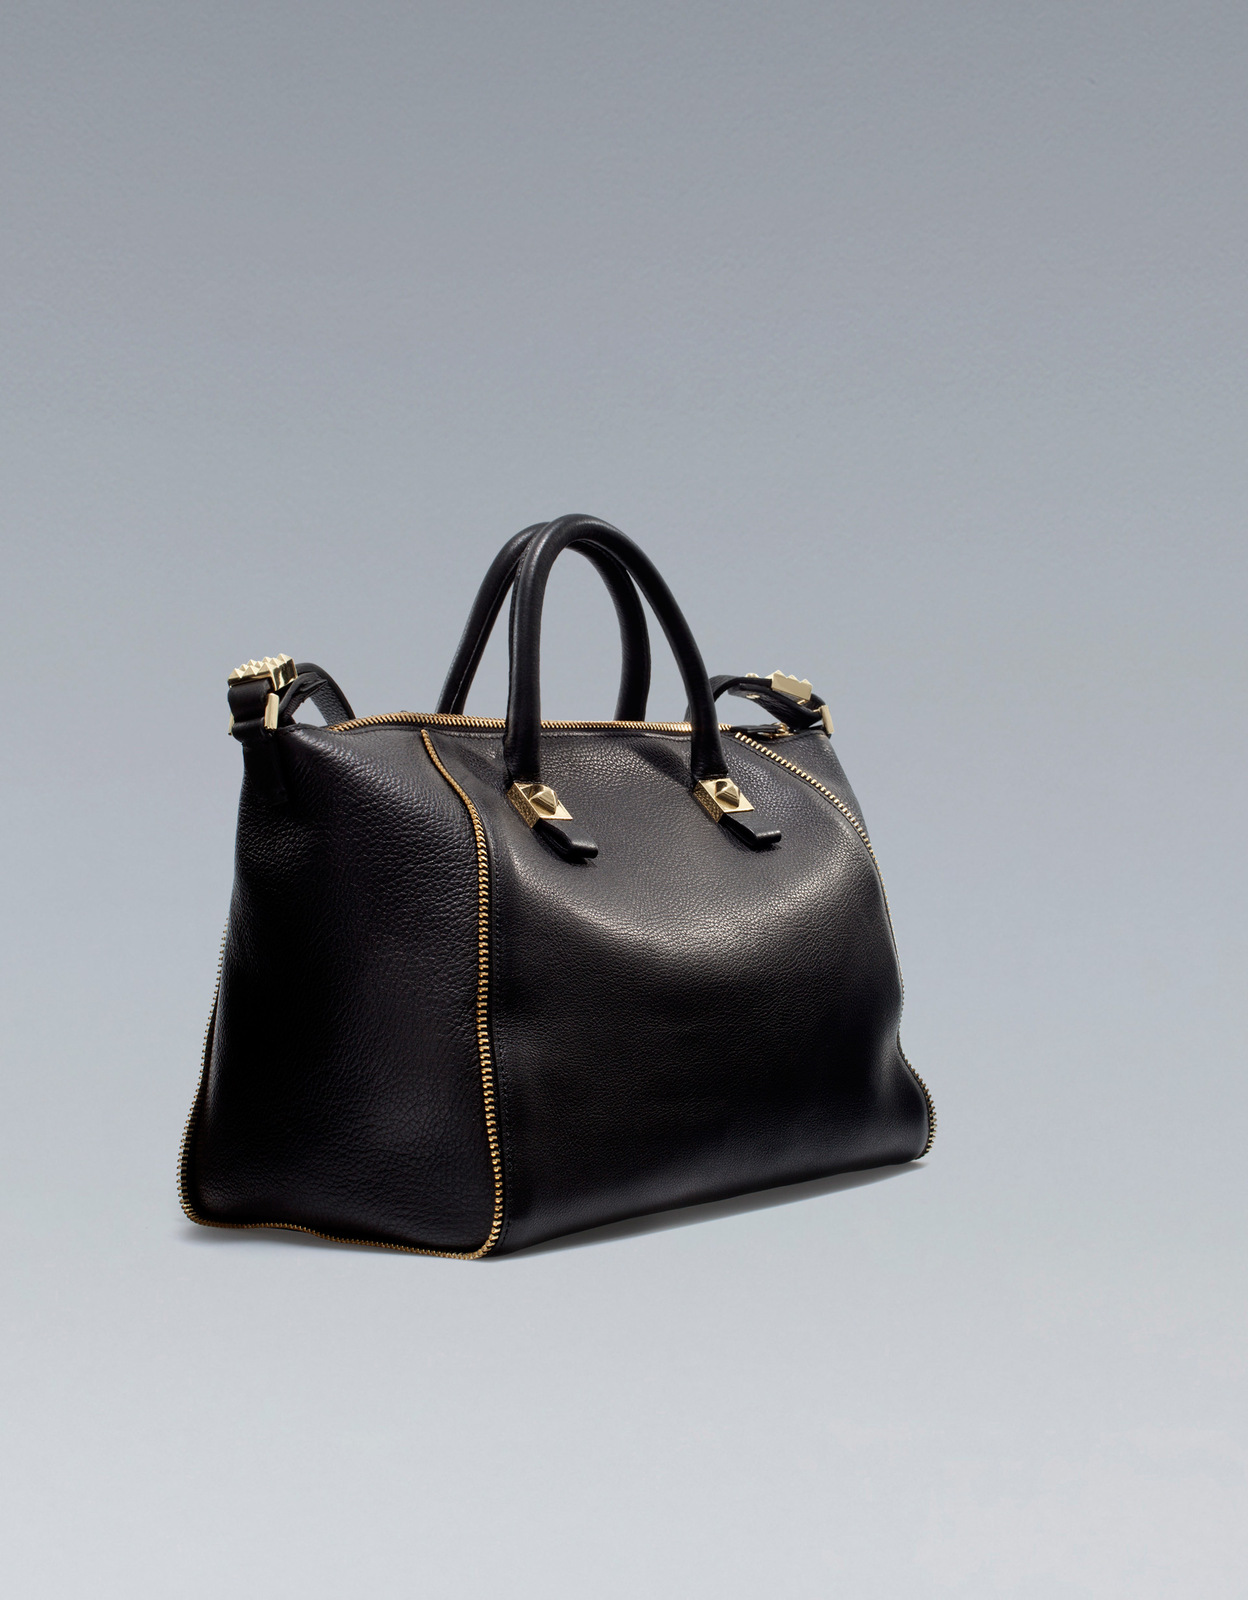 Zara fekete cipzáras táska 2012 fotója